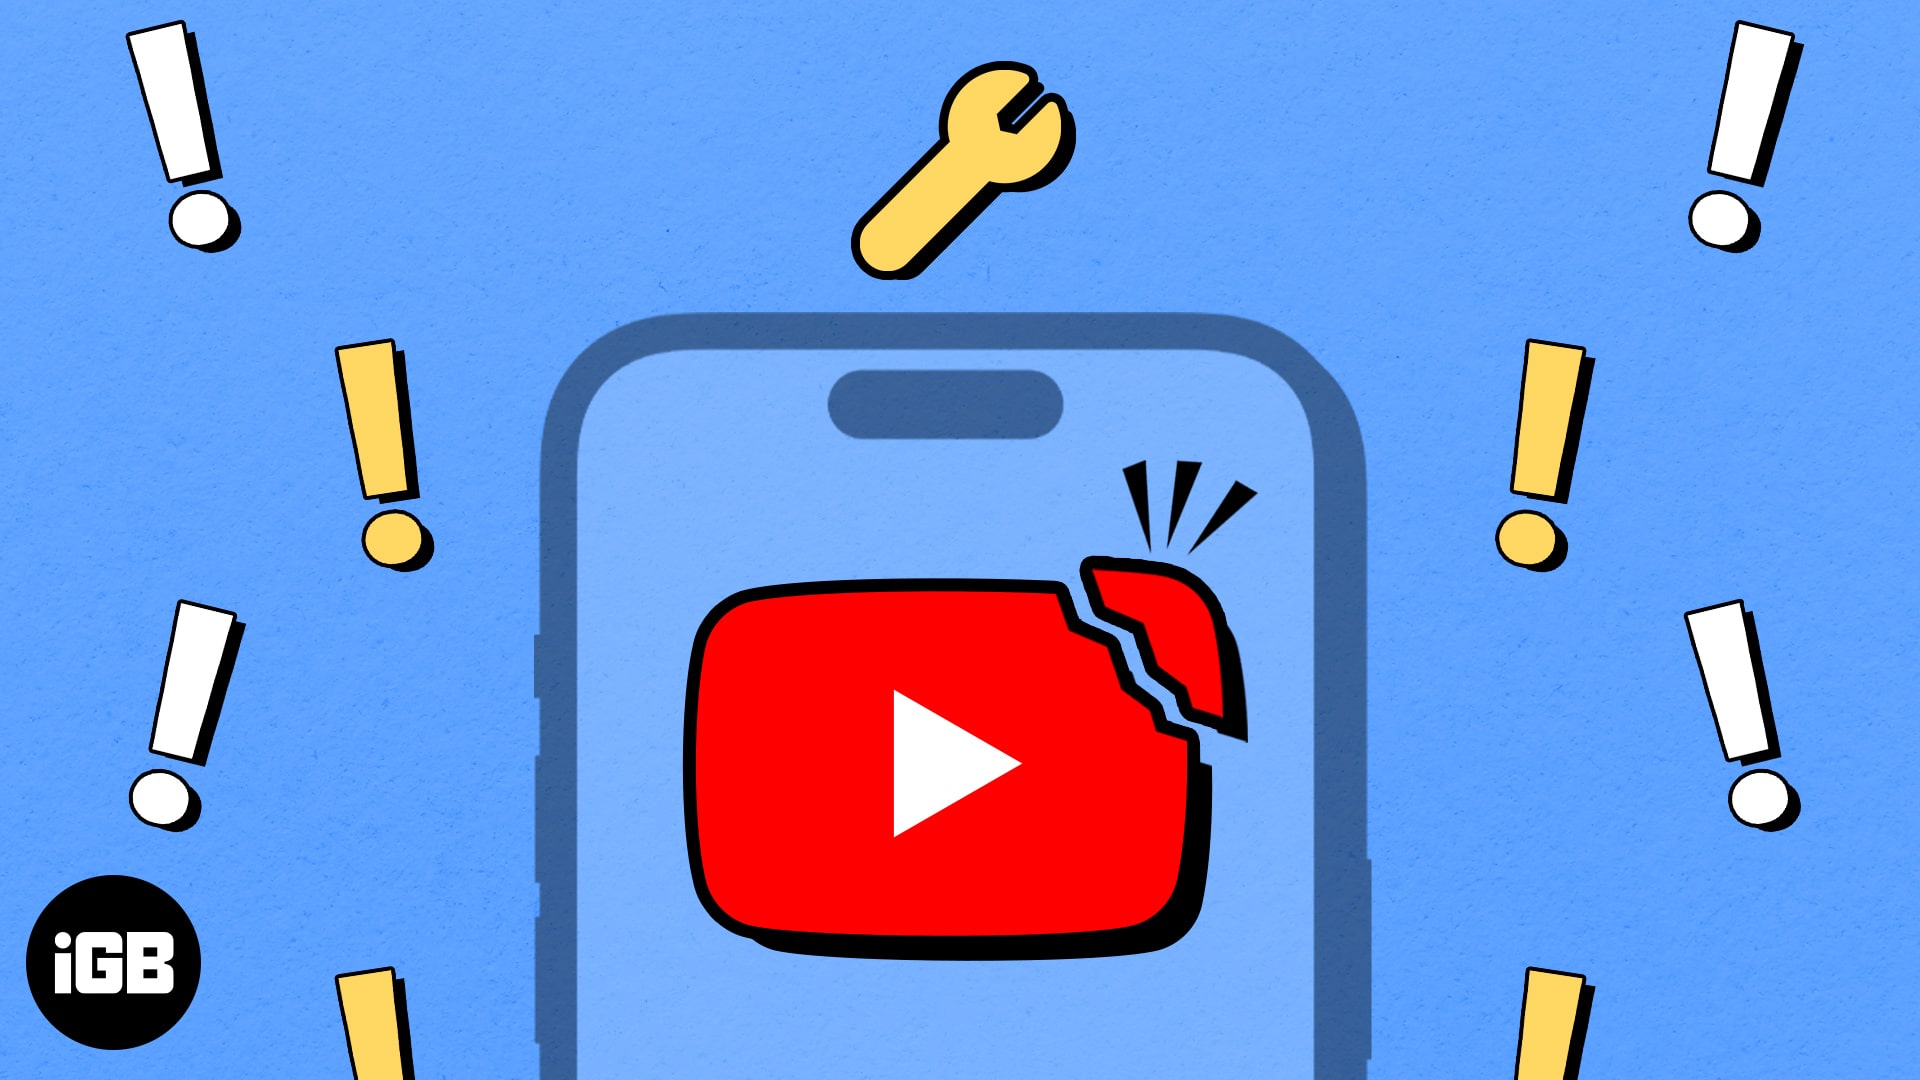 Youtube app keeps crashing on iphone